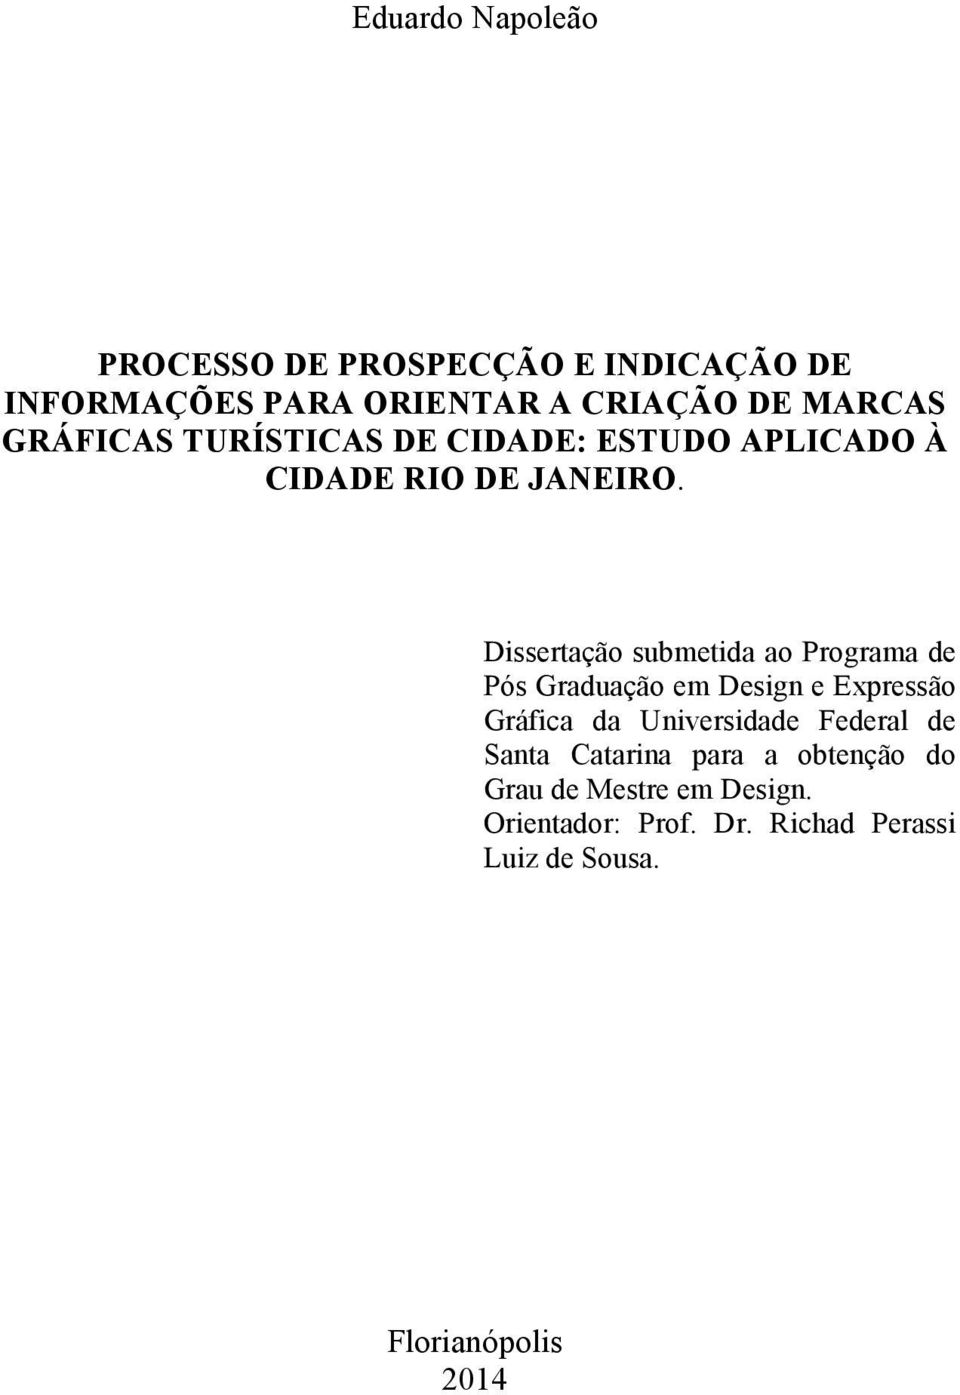 Dissertação submetida ao Programa de Pós Graduação em Design e Expressão Gráfica da Universidade